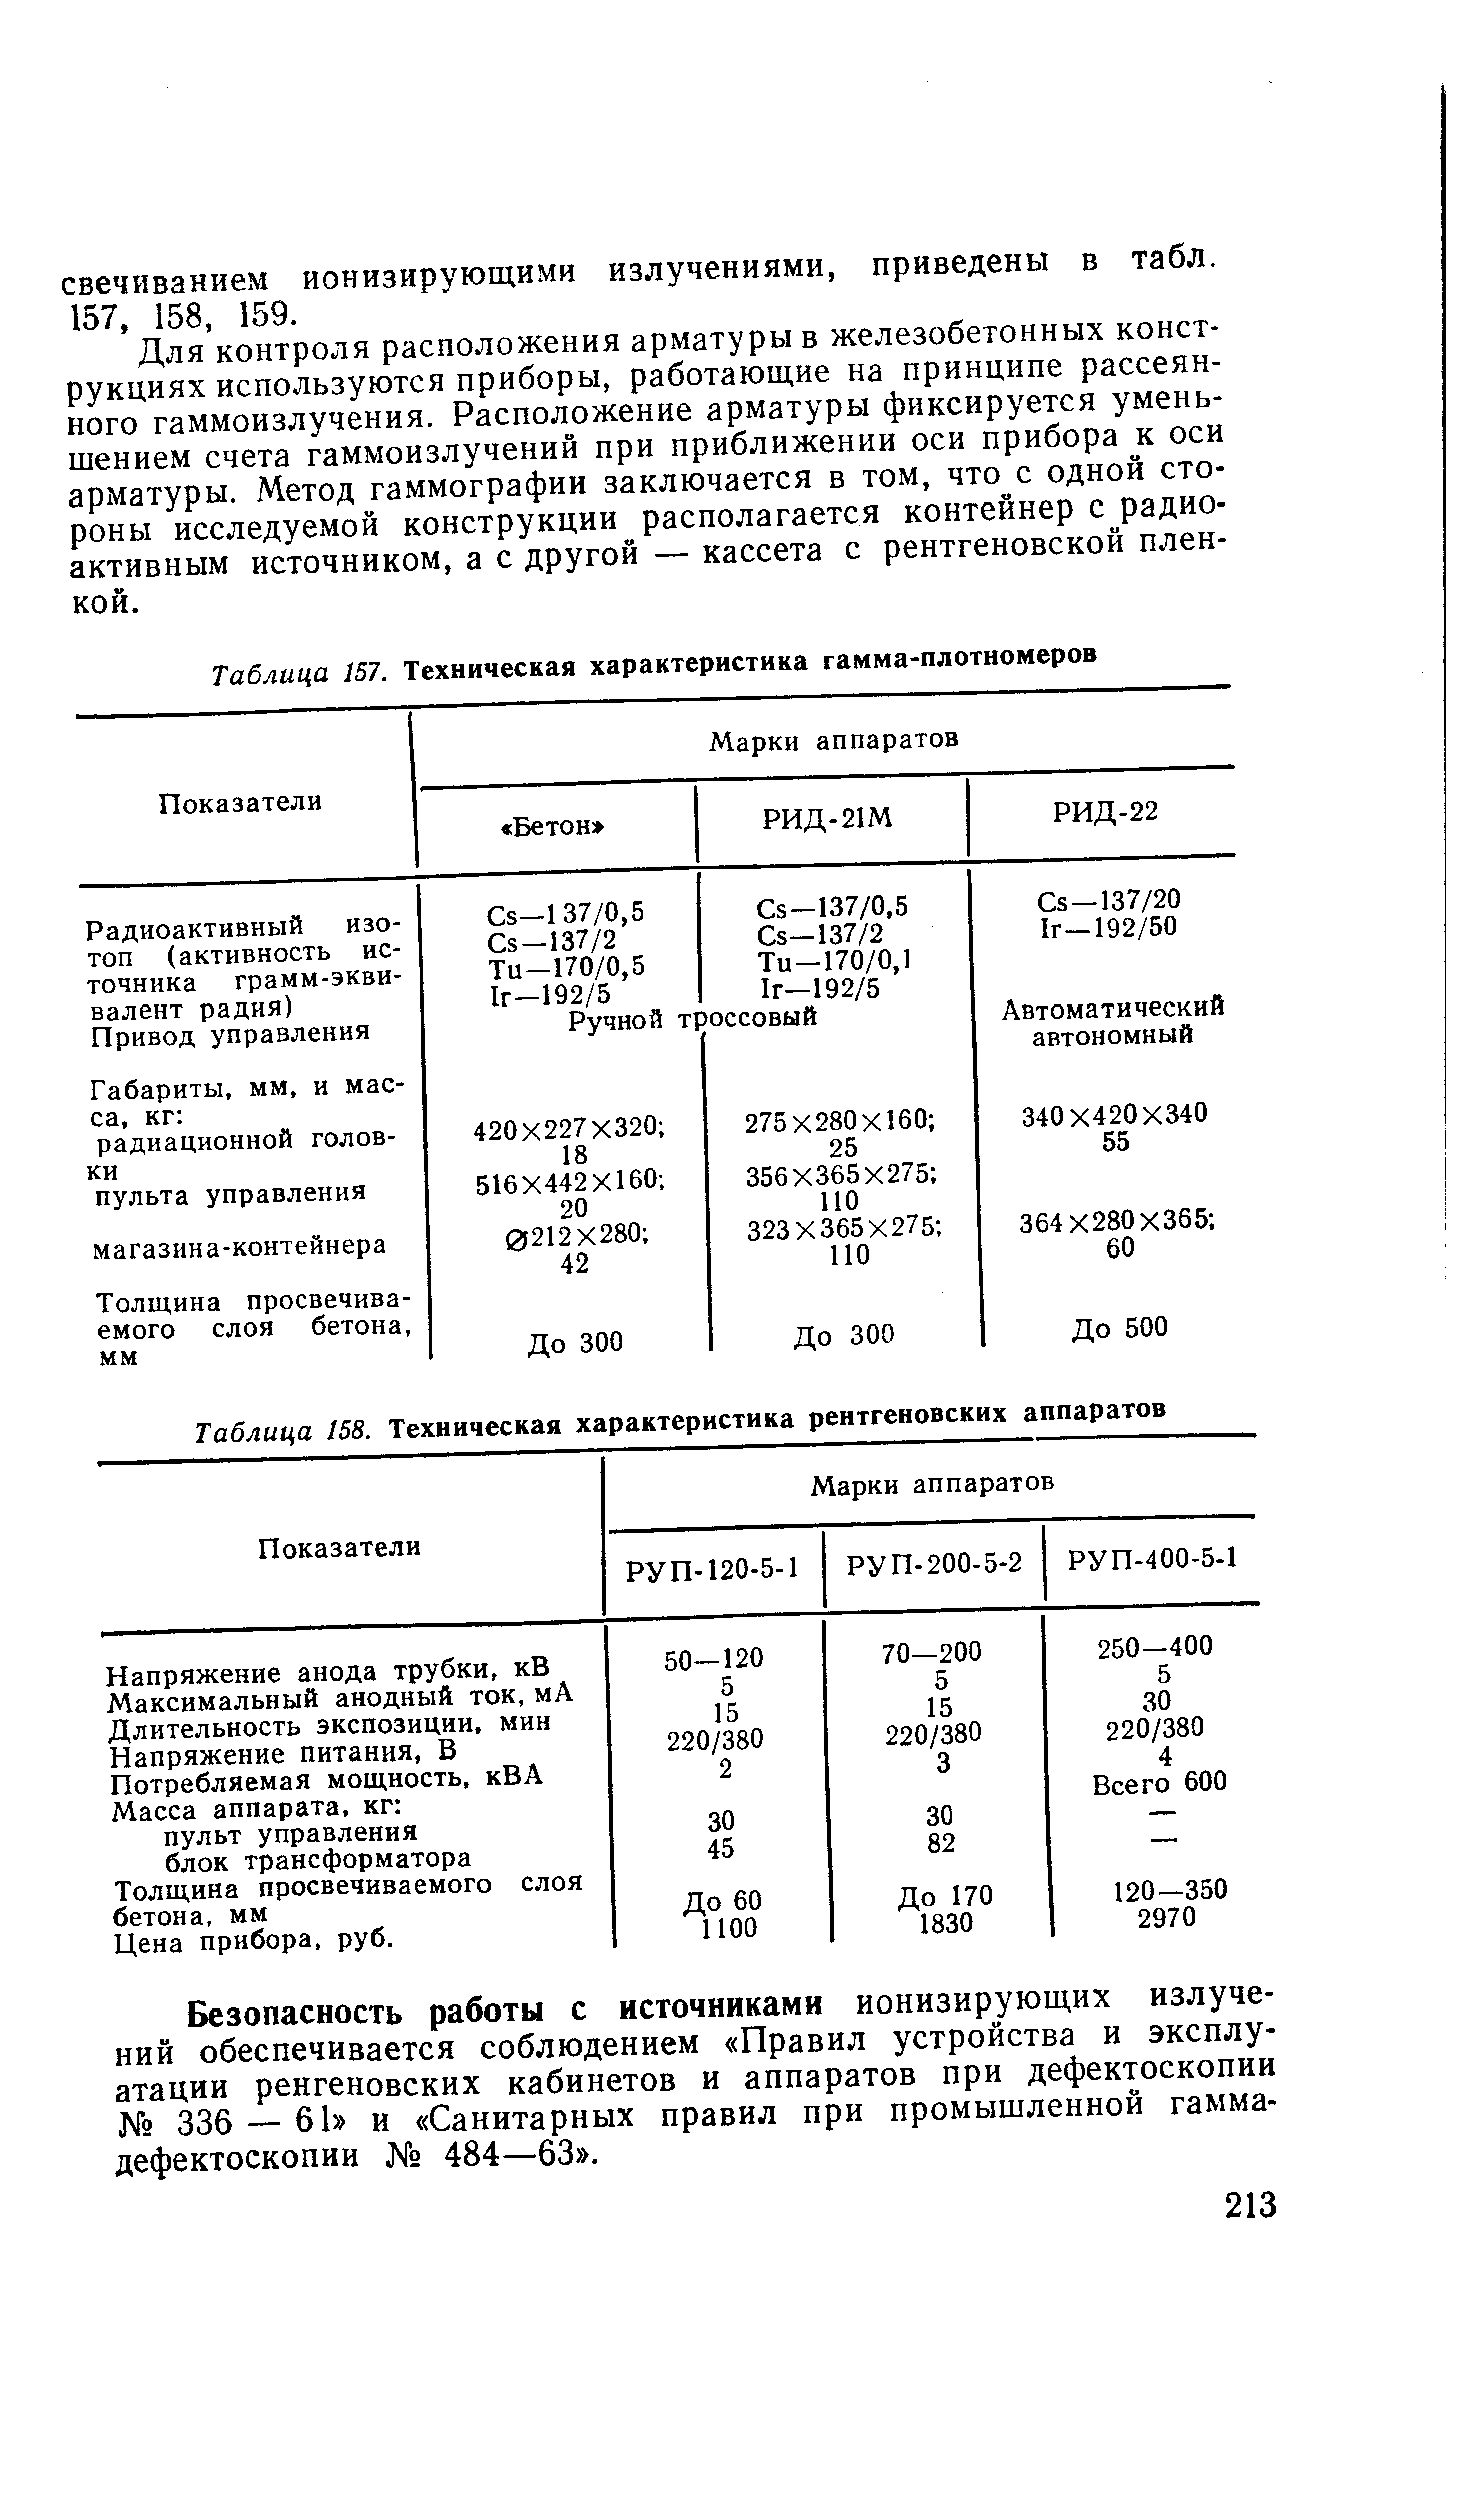 Таблица 157. Техническая характеристика гамма-плотномеров
